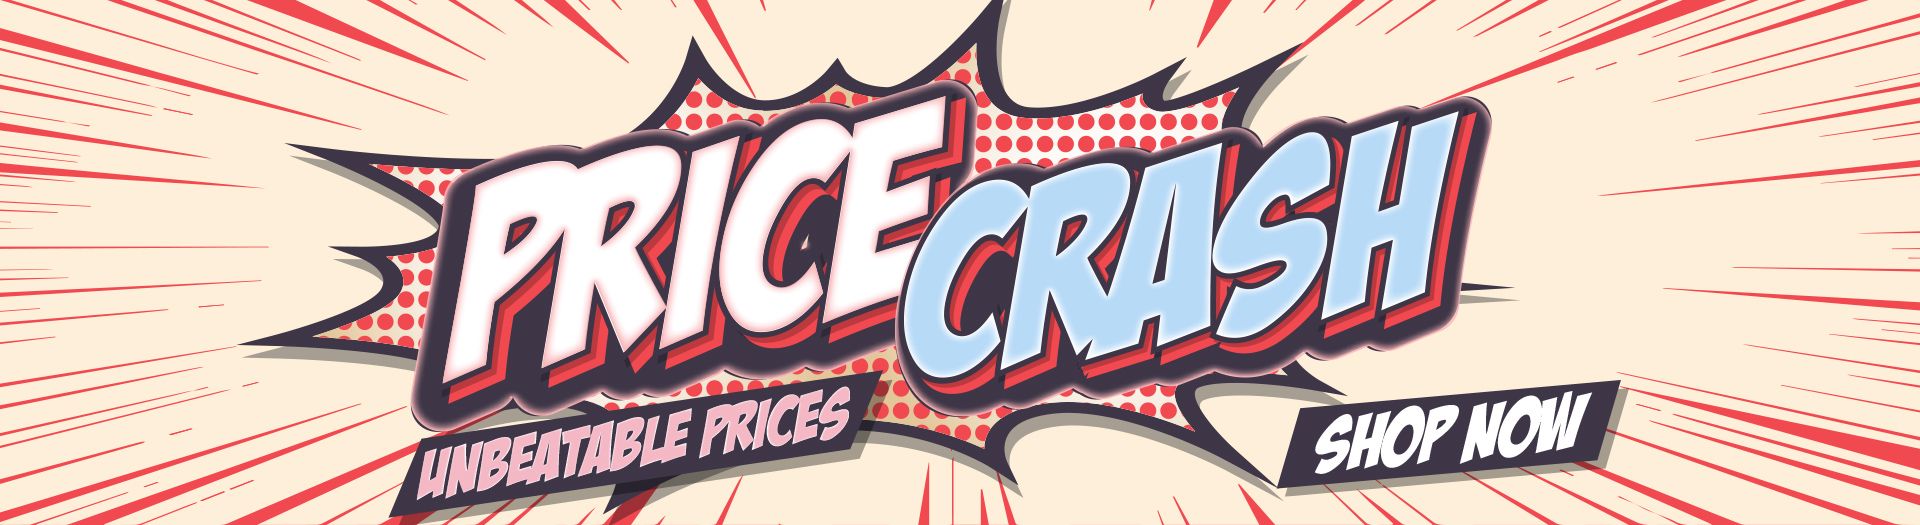 Price Crash